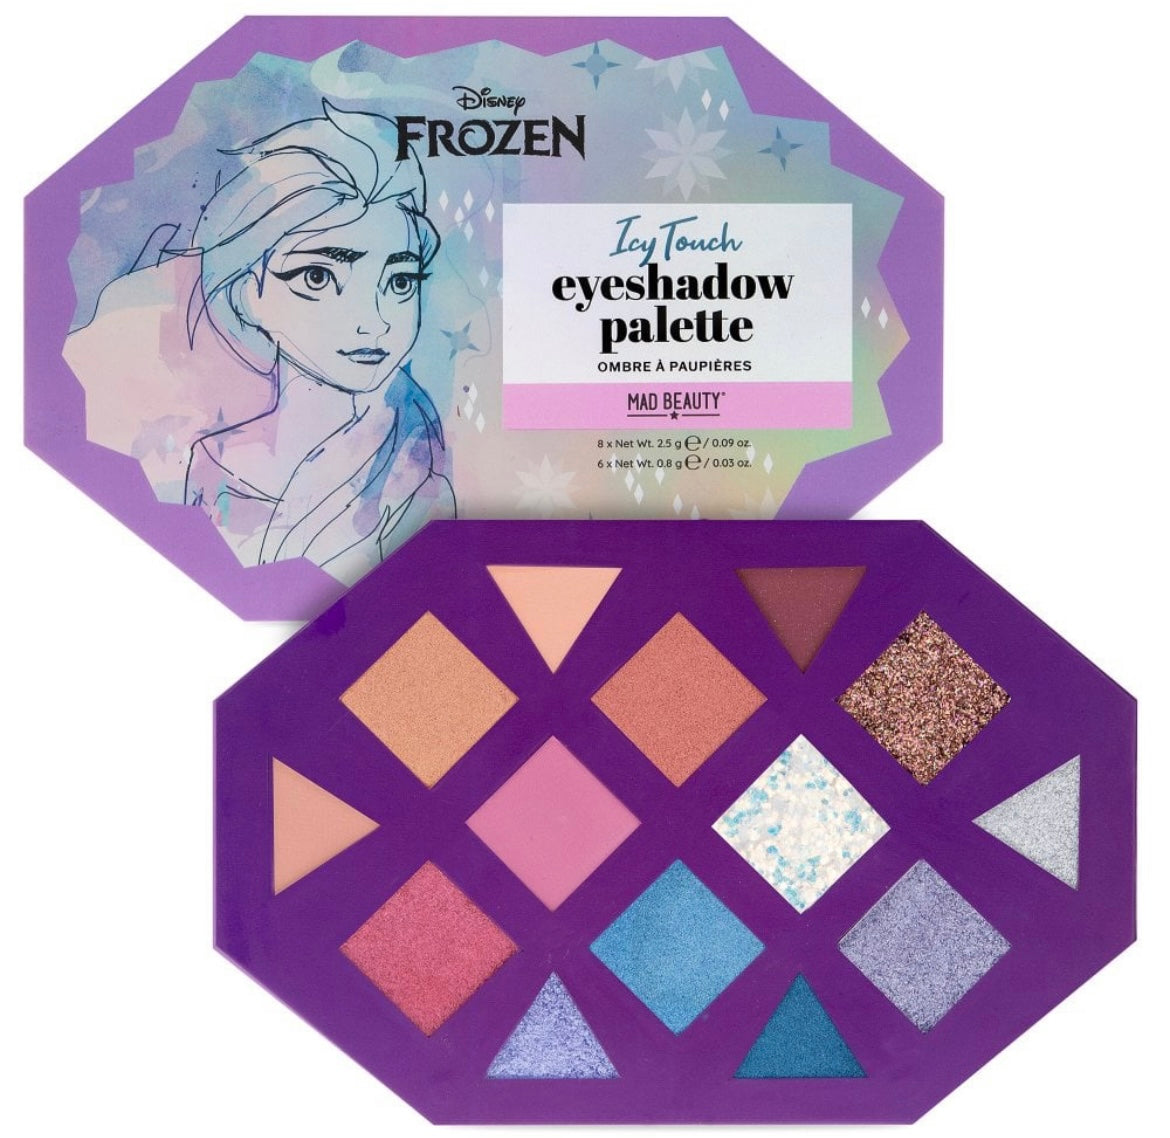 Disney Frozen Icy Touch Eyeshadow Palette